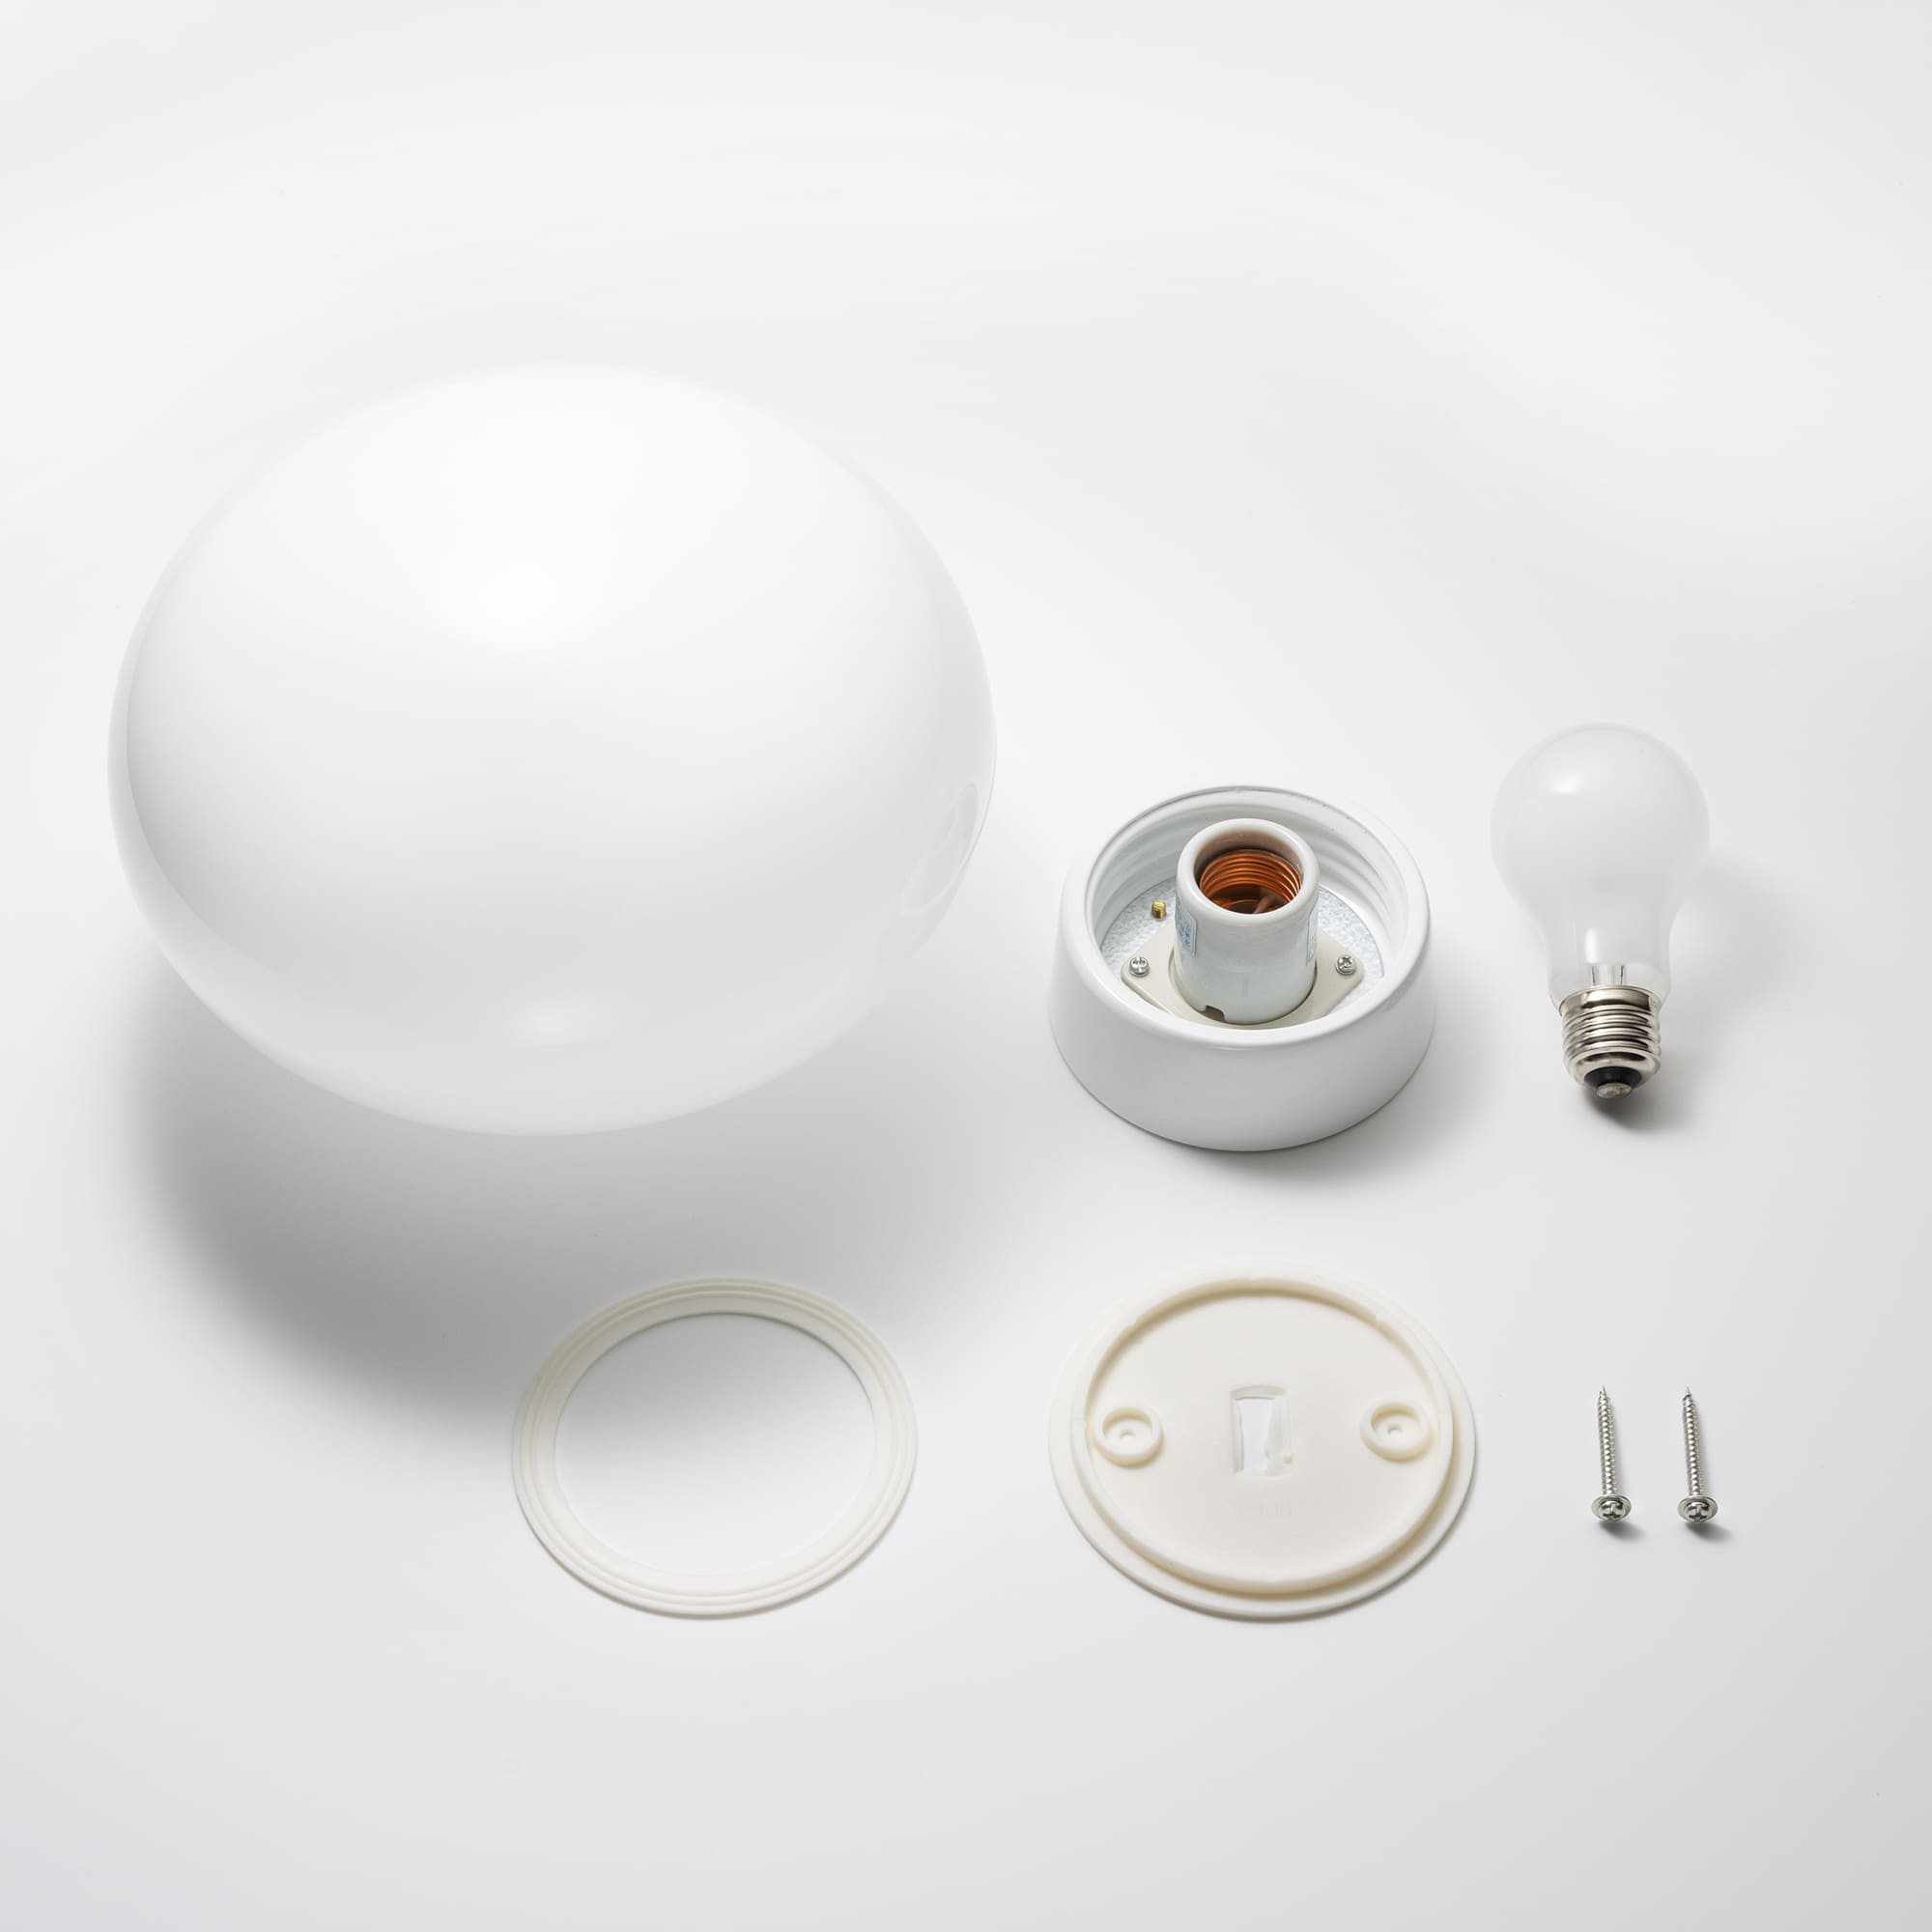 ミルクガラス照明 ホワイト 楕円 LT-BR005-06-G141 電球、ゴムパッキン、取付ネジが付属します